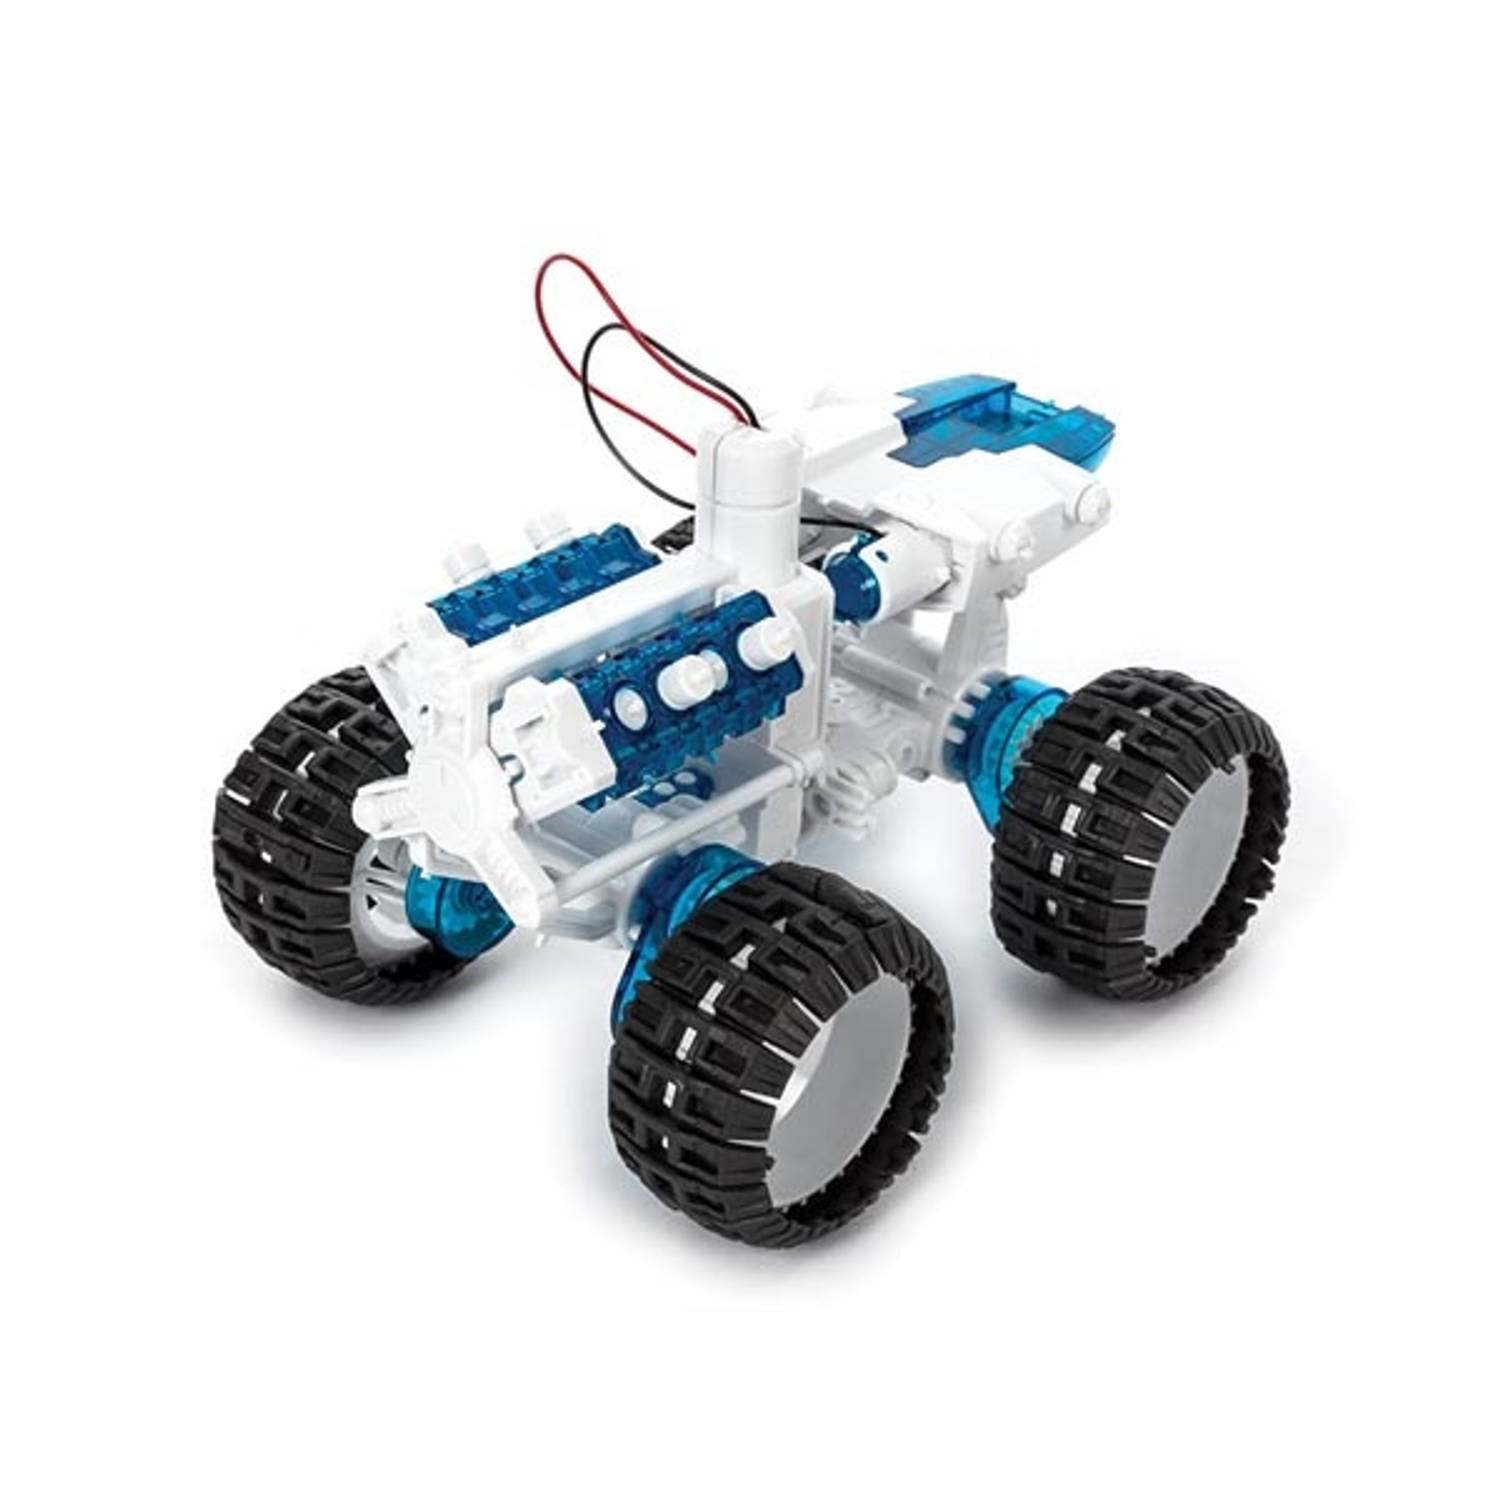 Velleman Educatieve Robot bouwkit, Bouwkit - Brandstofcelauto - Zout Water Aangedreven  (KSR22) Speelgoedrobot, STEM Constructiespeelgoed